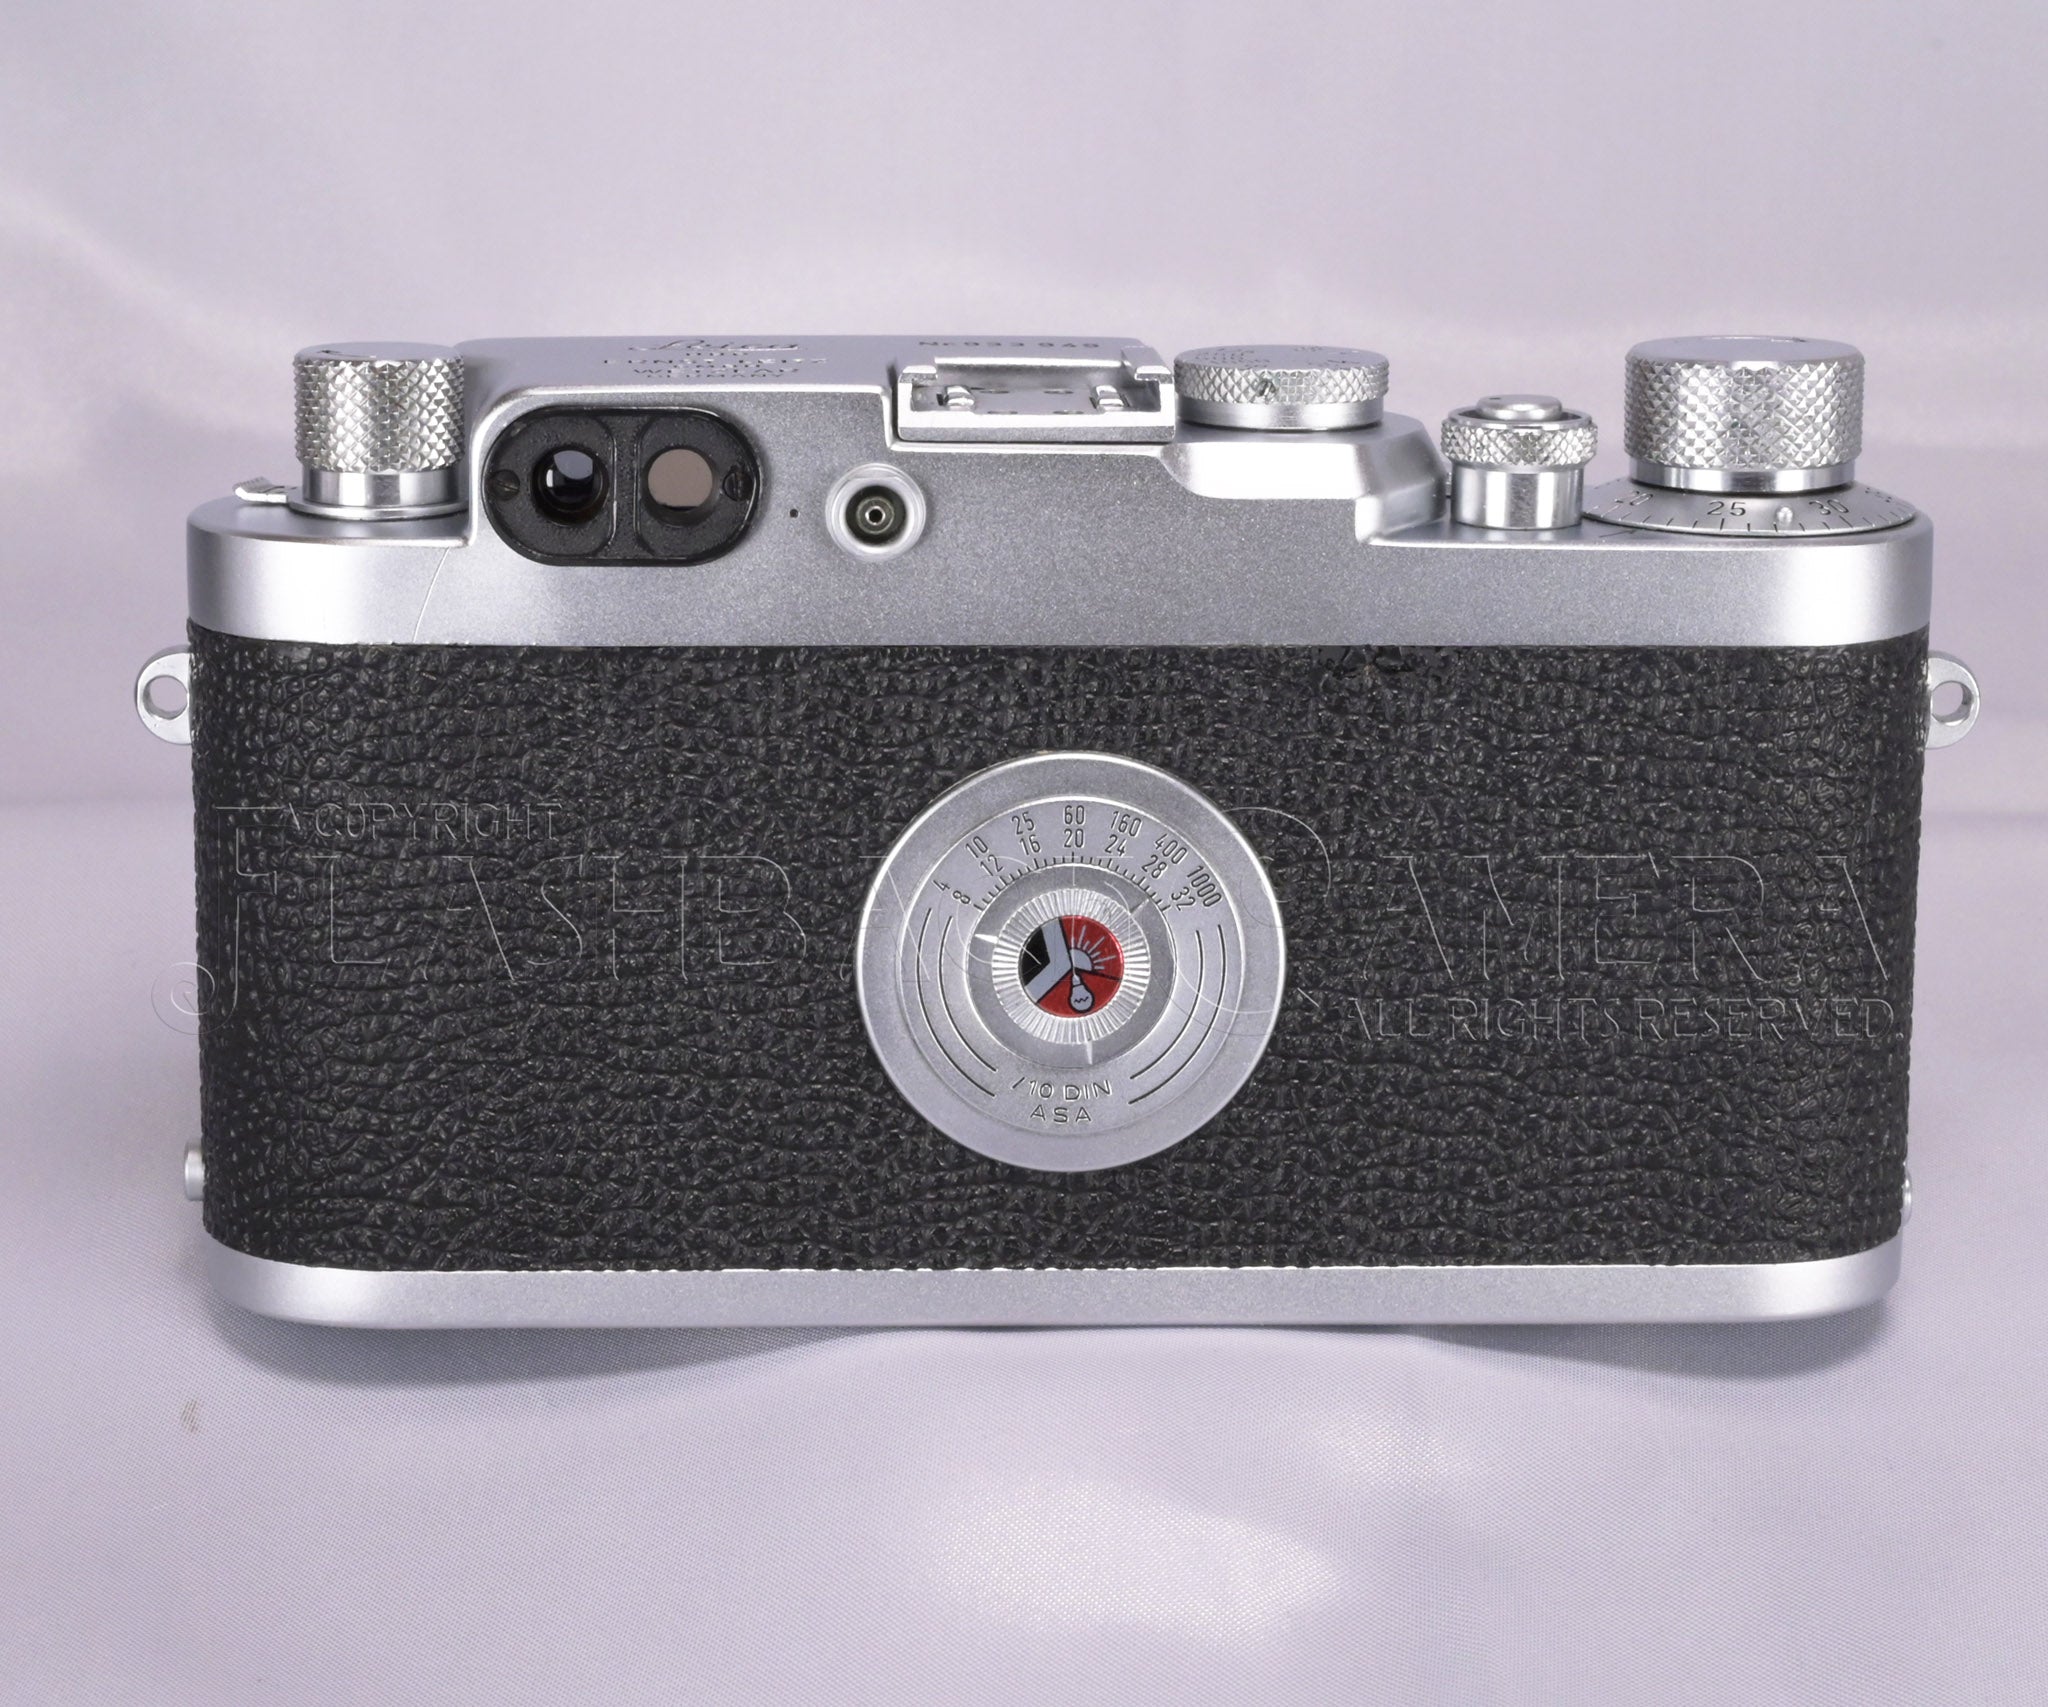 Leica IIIg – FLASHBACK CAMERA